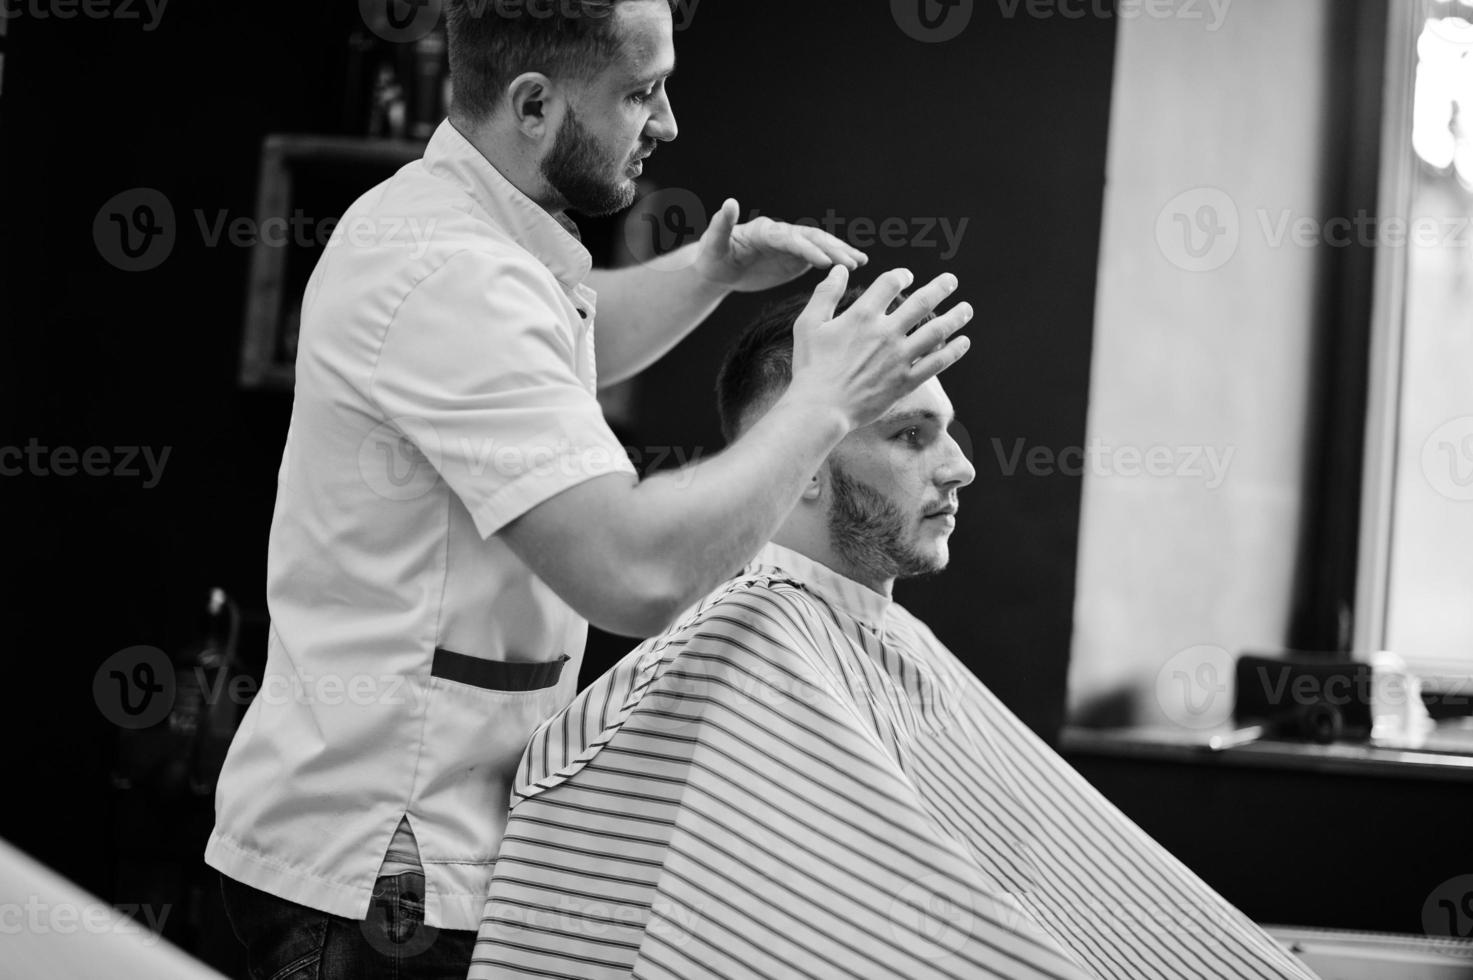 jovem barbudo cortando o cabelo pelo cabeleireiro enquanto está sentado na cadeira na barbearia. alma de barbeiro. foto